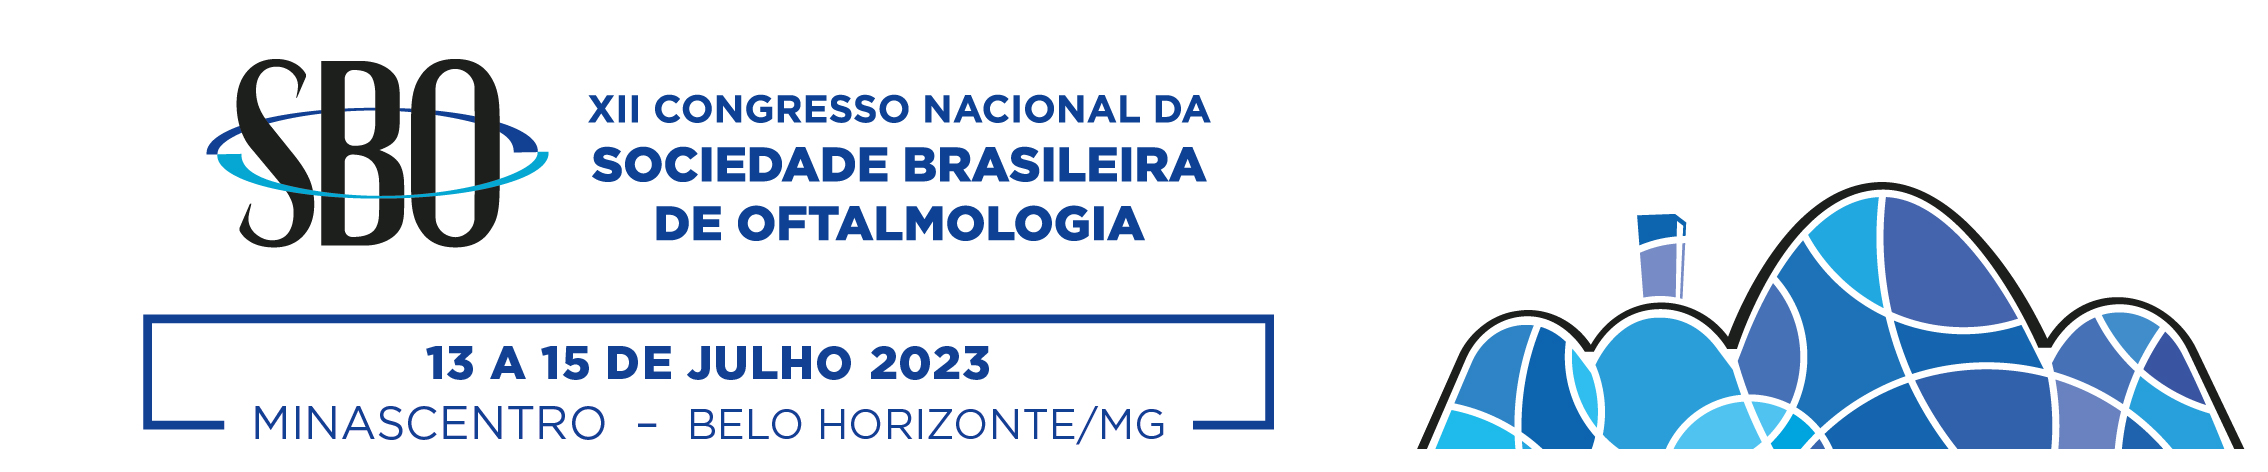 XII Congresso Nacional da Sociedade Brasileira de Oftalmologia